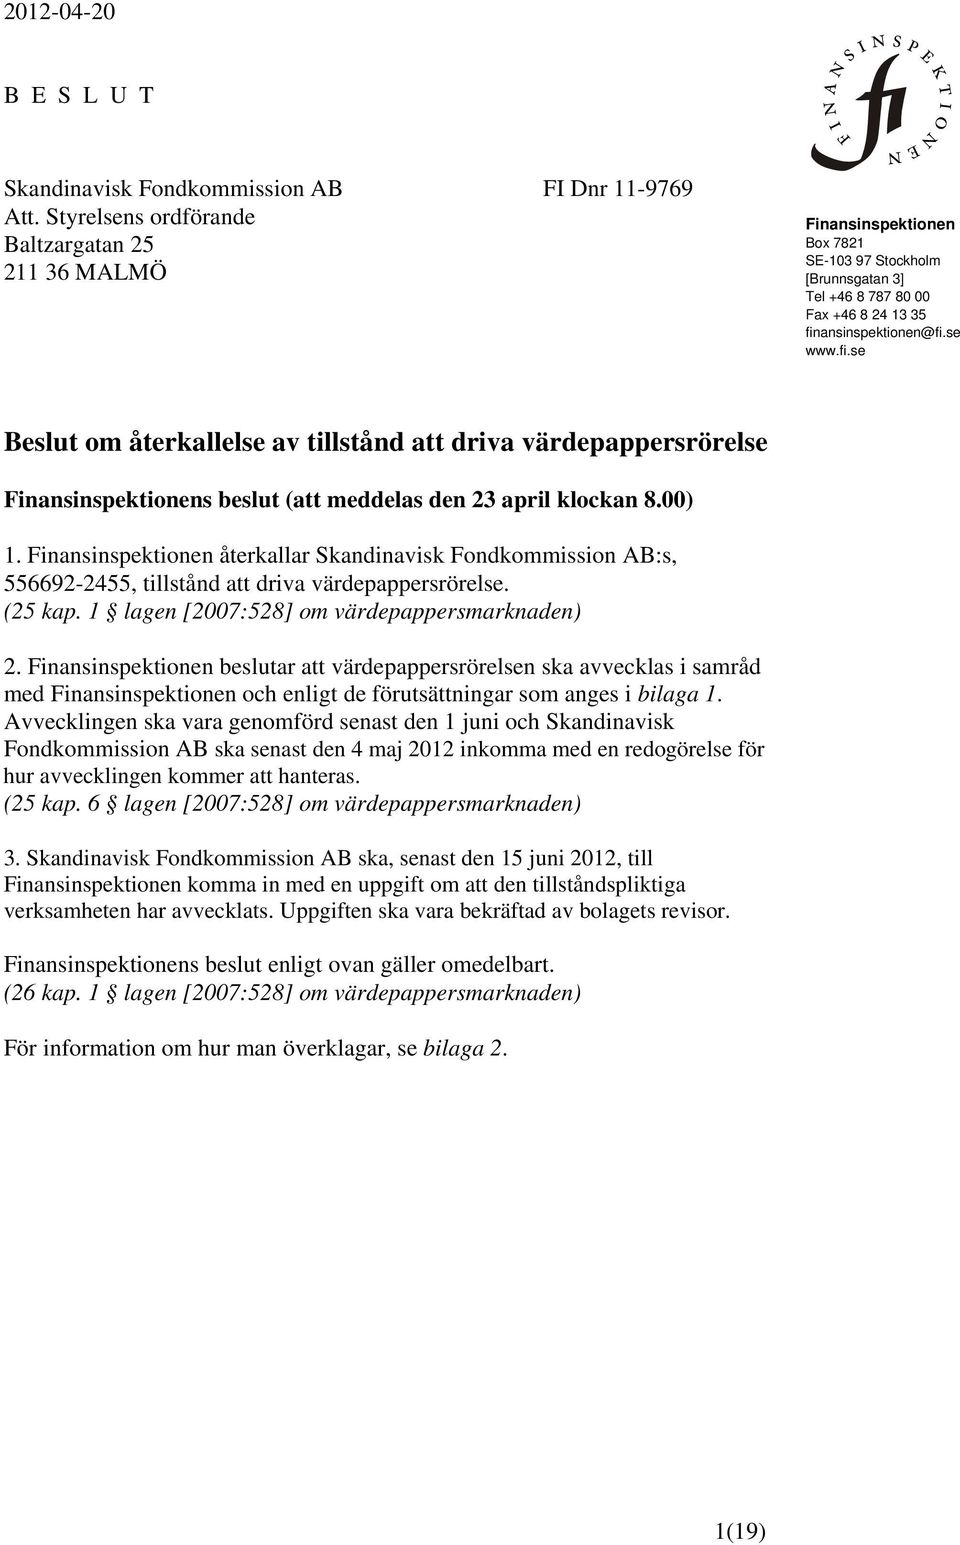 ansinspektionen@fi.se www.fi.se Beslut om återkallelse av tillstånd att driva värdepappersrörelse Finansinspektionens beslut (att meddelas den 23 april klockan 8.00) 1.